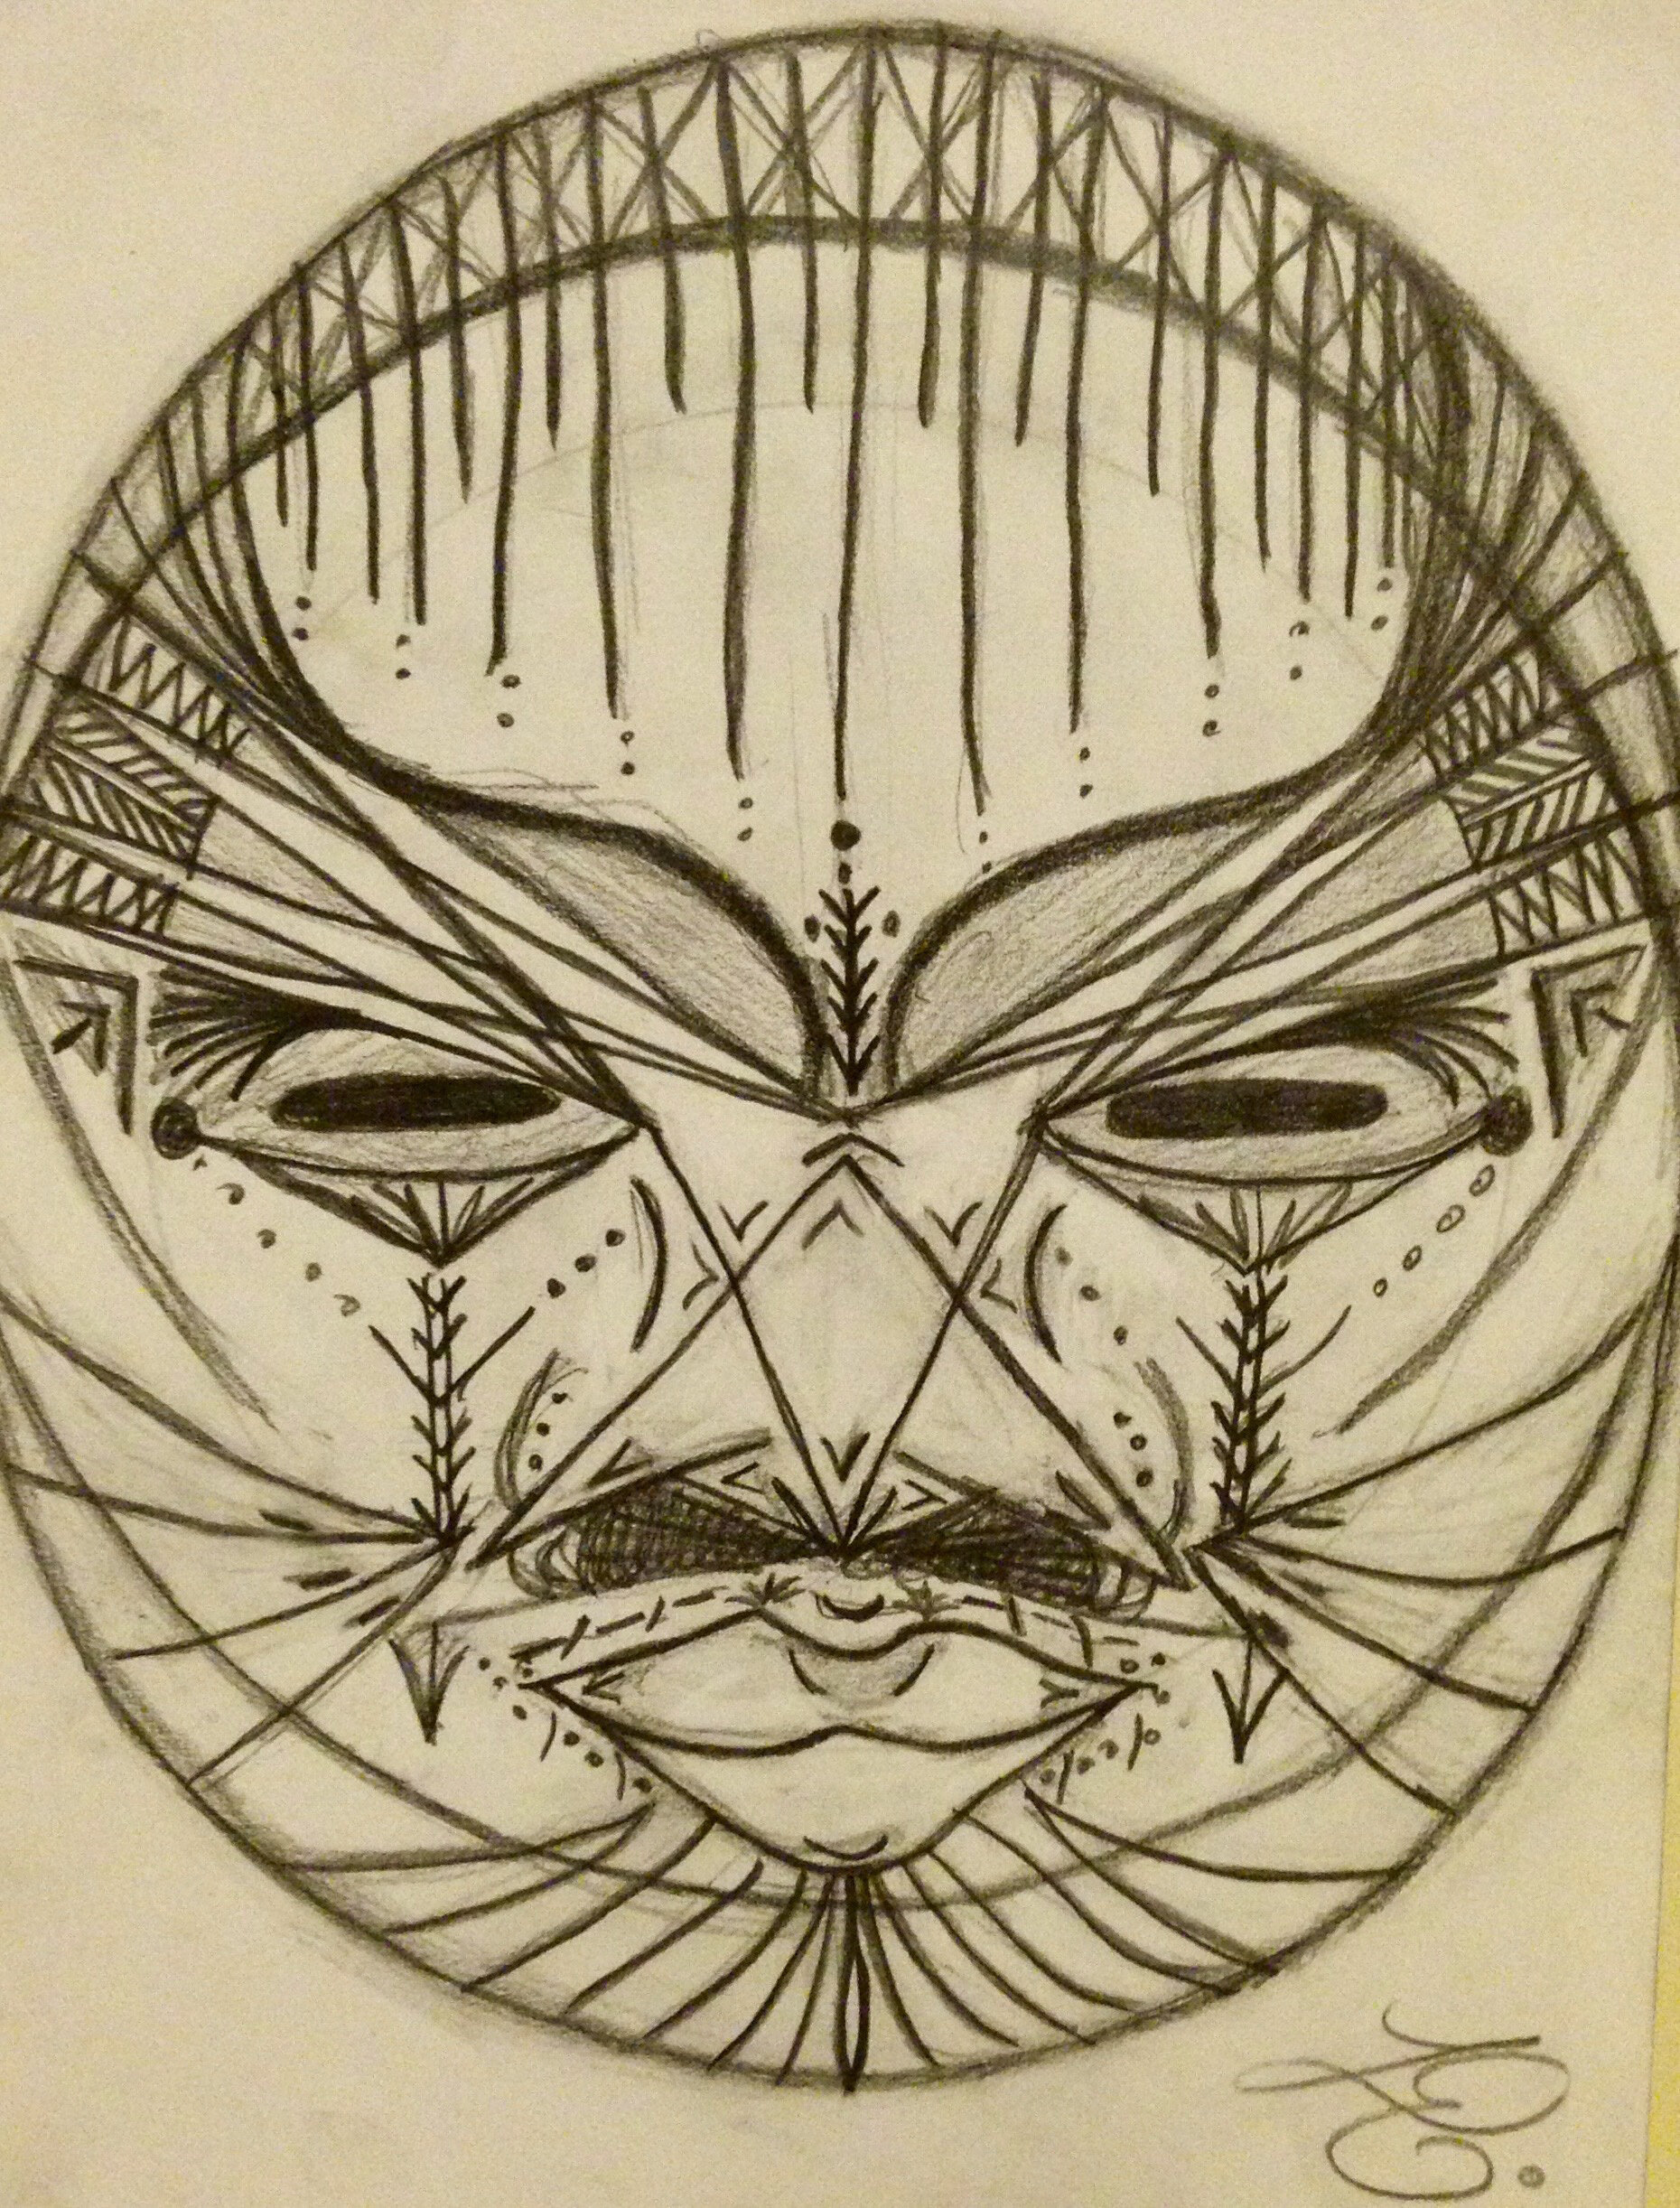 Untitled mask sketch